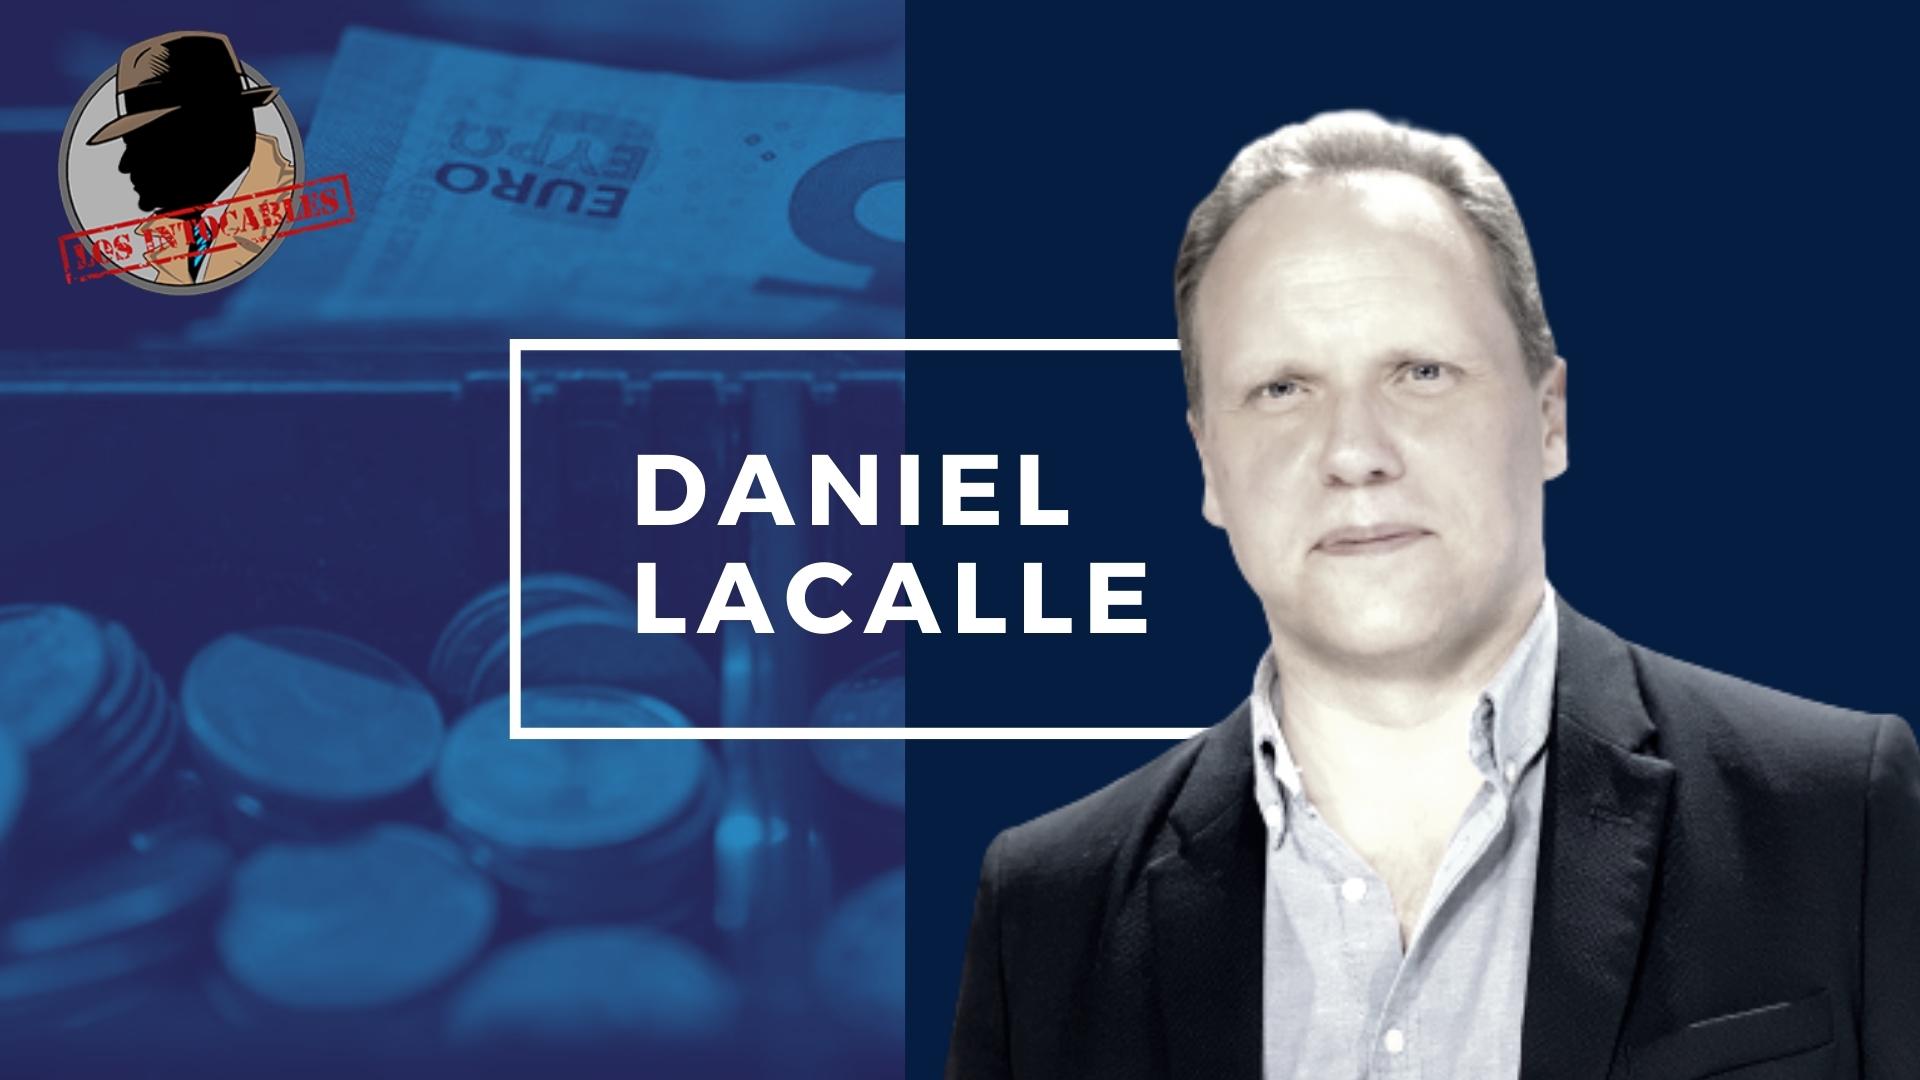 DANIEL LACALLE: <strong>LOS DOS FACTORES QUE HAN BAJADO EN LA INFLACIÓN SON LA ELECTRICIDAD E HIDROCARBUROS</strong>DANIEL LACALLE: